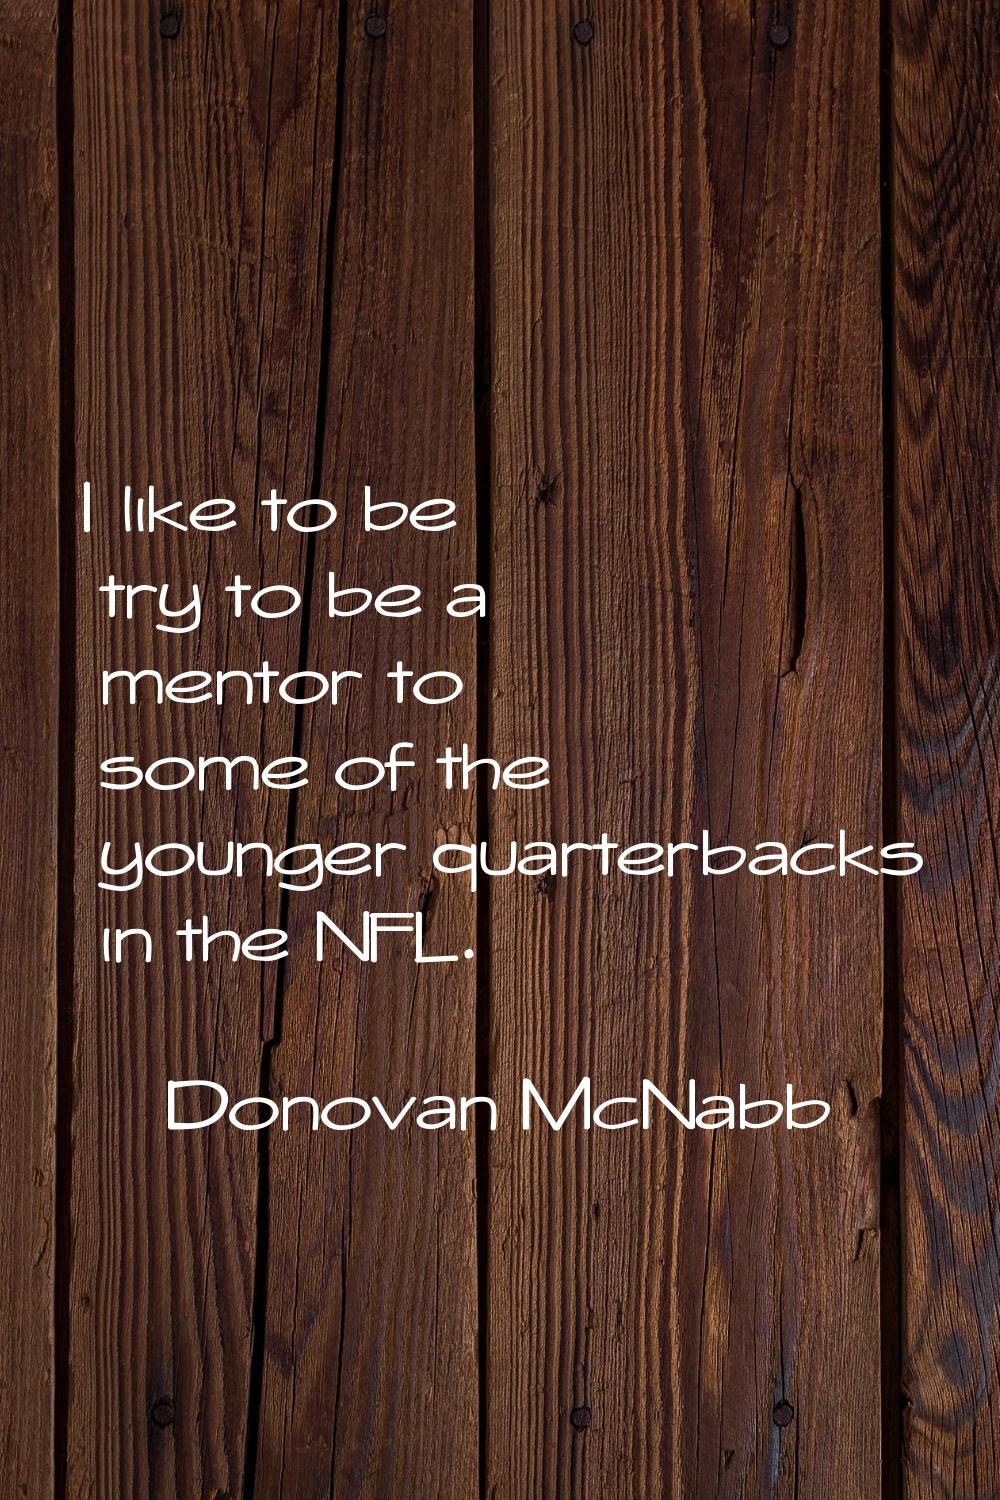 I like to be try to be a mentor to some of the younger quarterbacks in the NFL.